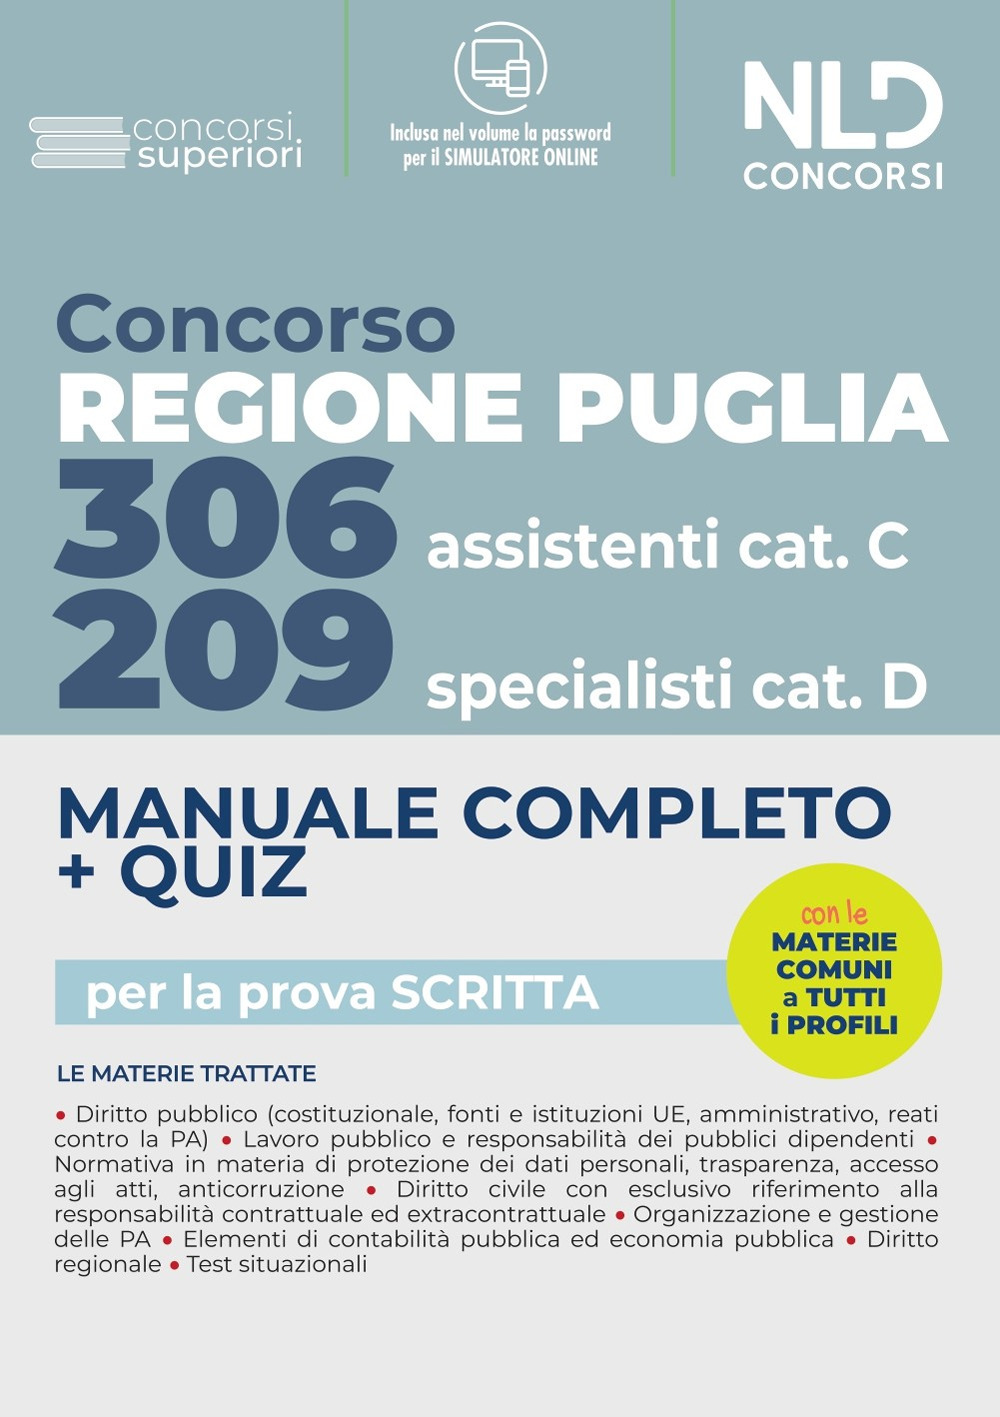 Concorso Regione Puglia 2022: Manuale Completo. Quiz per 209 Specialisti cat. D. 306 Assistenti Cat. CVari profili